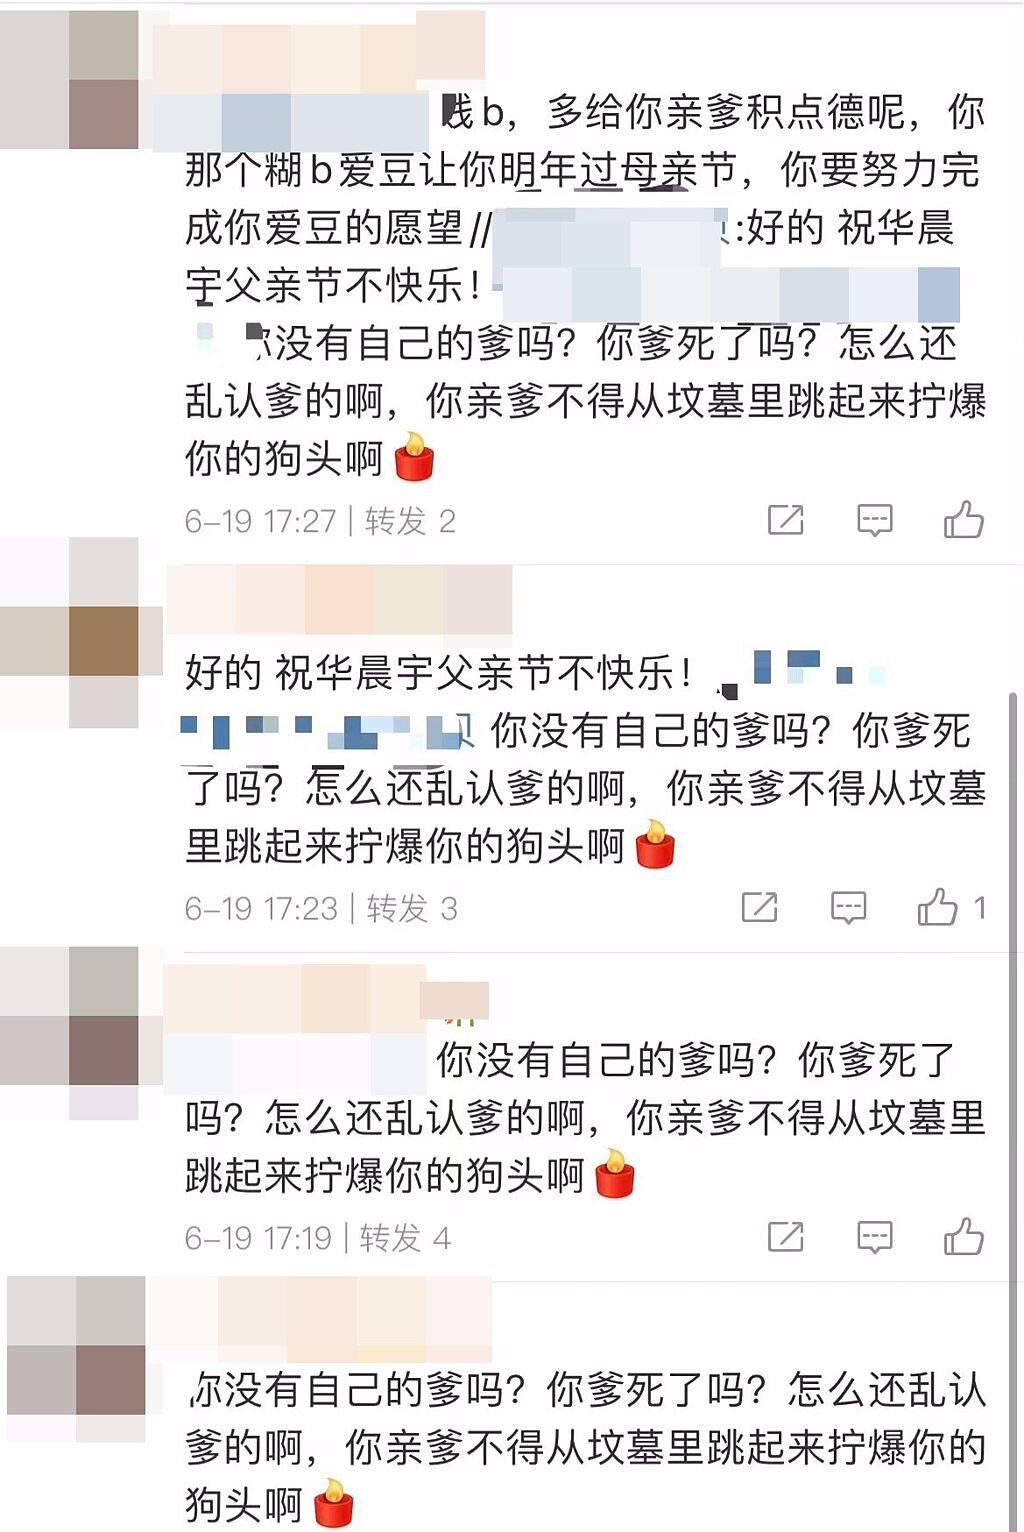 有網友祝華晨宇父親節快樂，遭到其粉絲圍剿惡毒咒罵。(翻攝自微博)